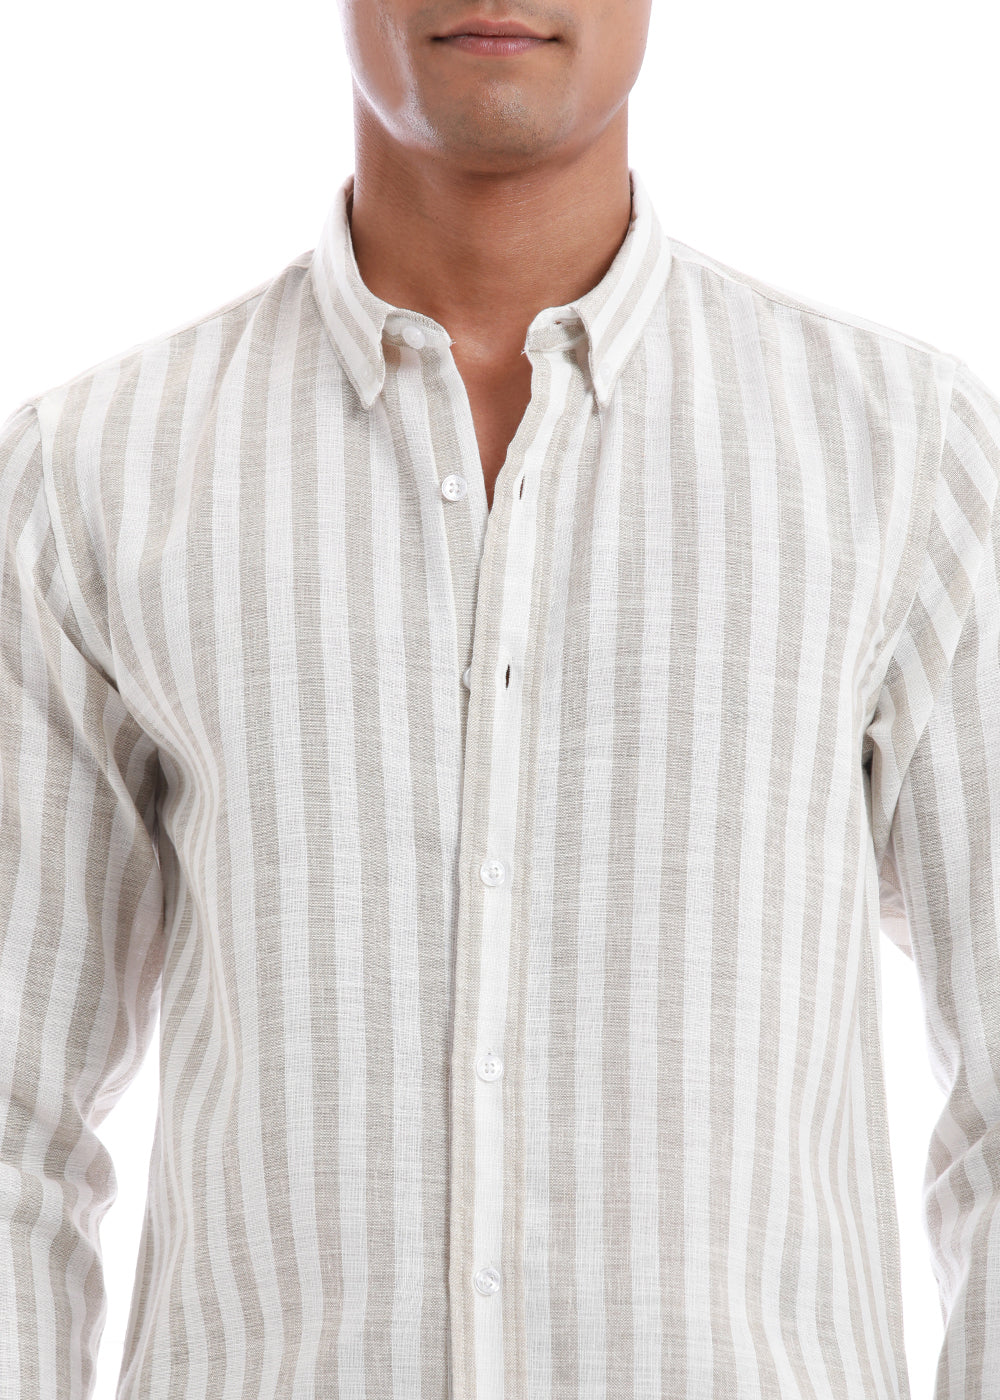 Classic Beige Stripe Blended Linen shirt